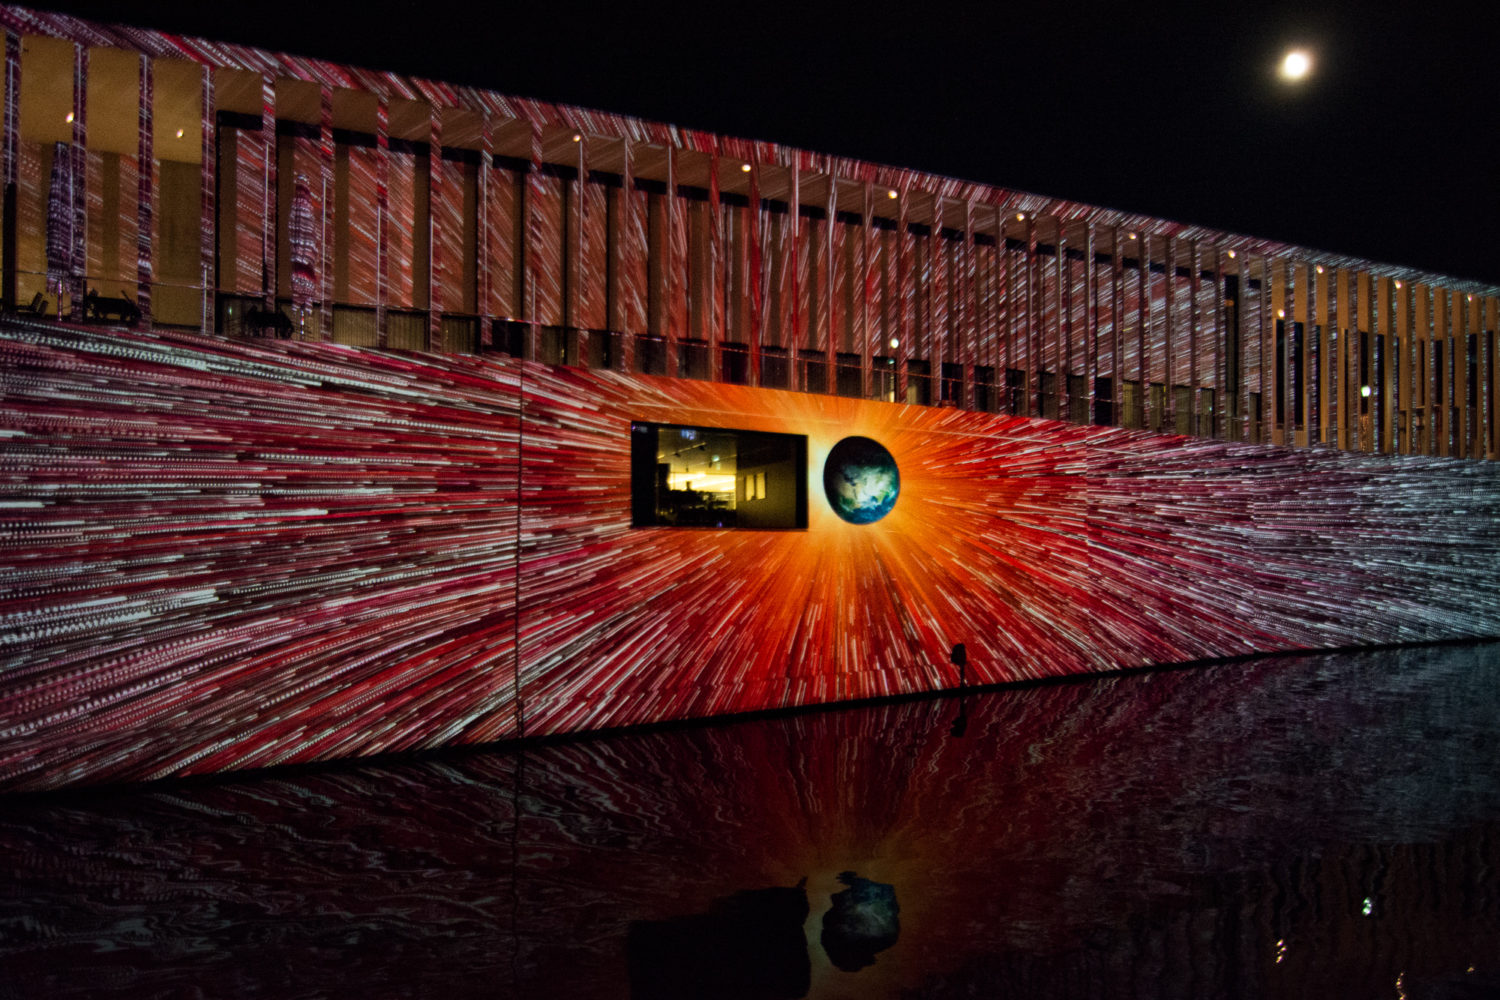 Wie in einem Raumschiff rauscht man bei diesem Bild mit Lichtgeschwindigkeit auf die Erde zu, projiziert an die Fassade der James-Simon-Galerie.  Foto: Imago/McPHOTO